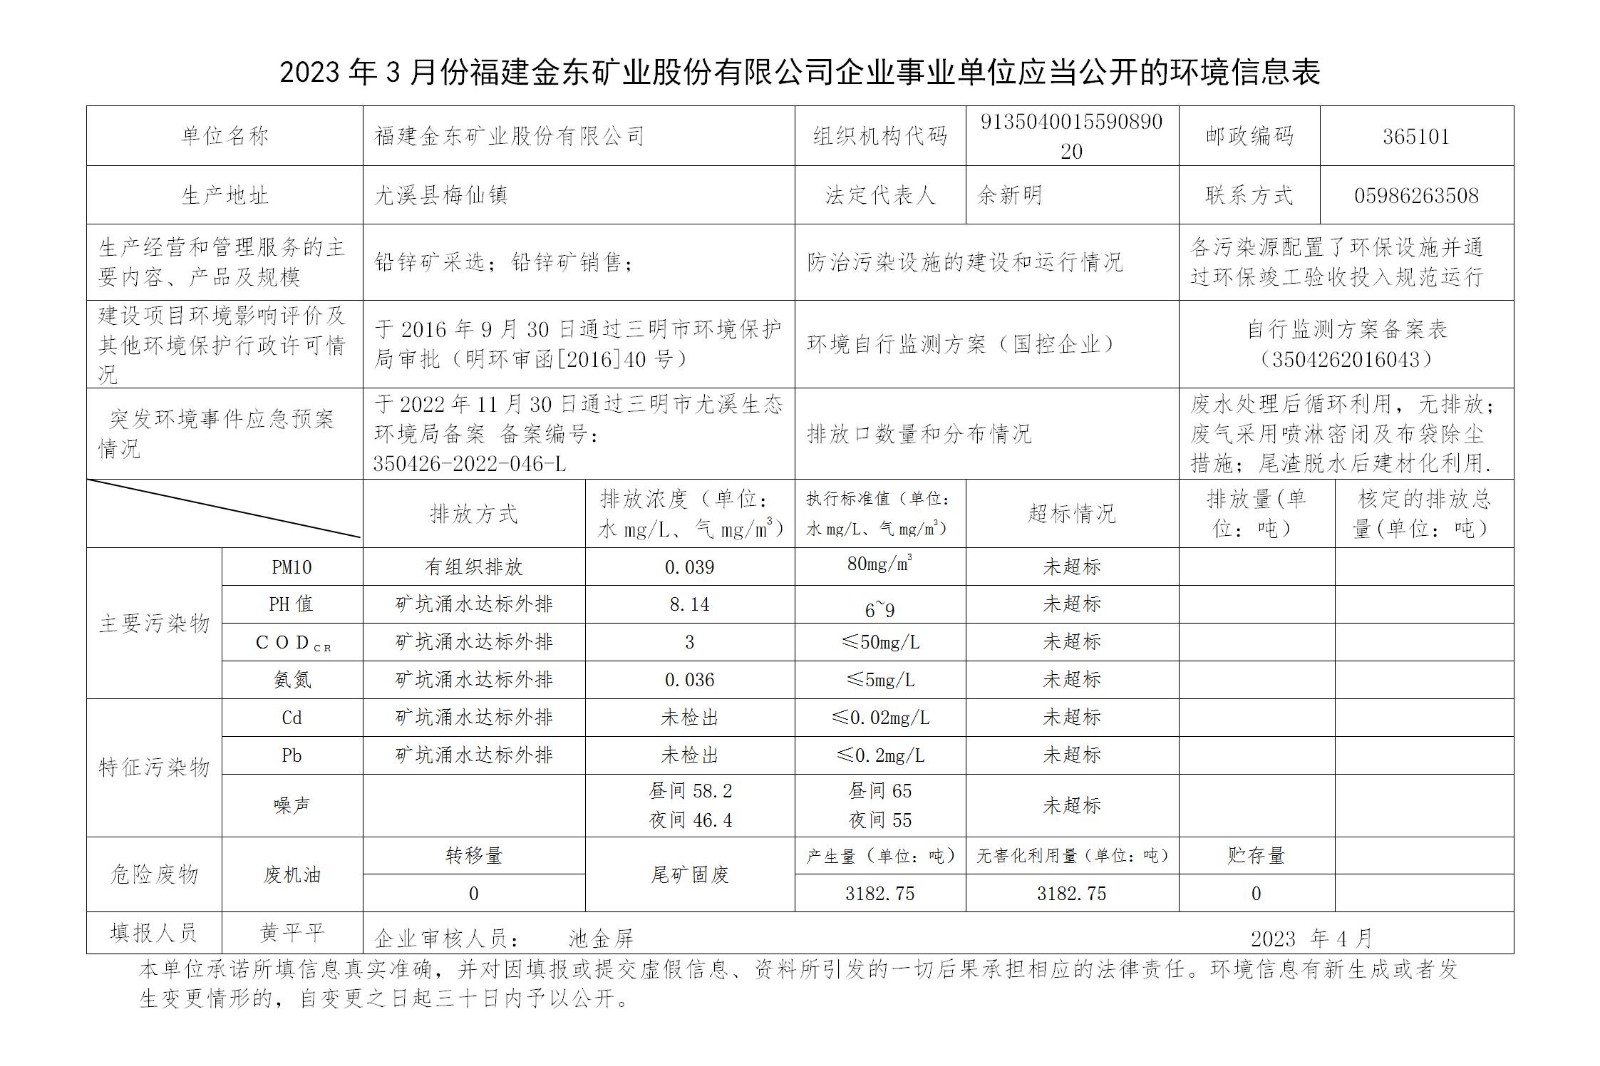 2023年3月份c7官网入口|中国集团有限公司官网企业事业单位应当公开的环境信息表_01.jpg